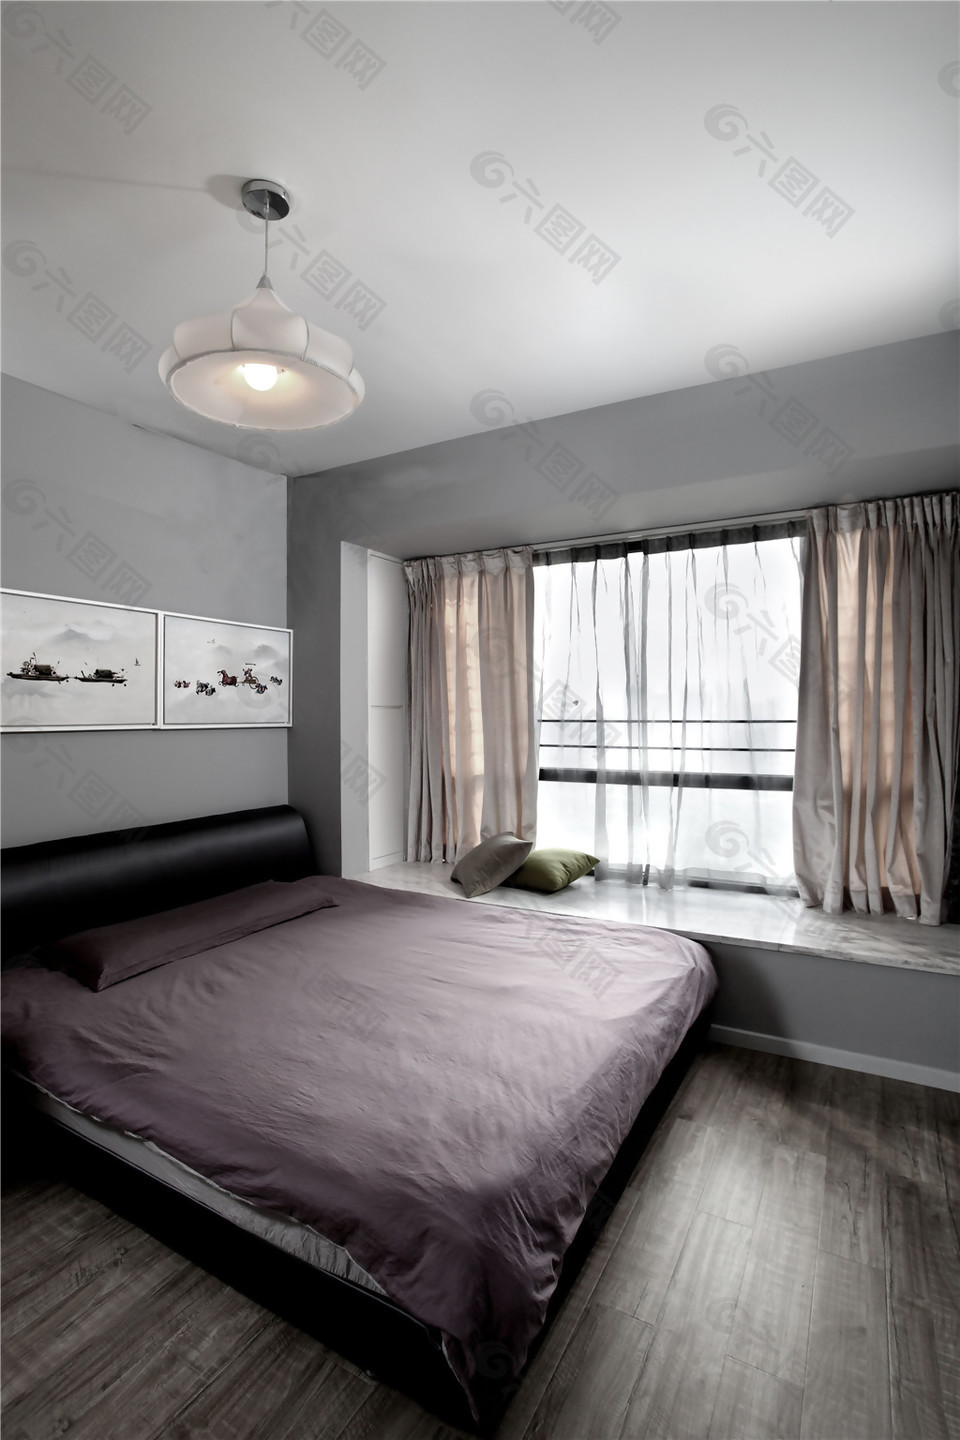 新中式现代简约风格卧室装修效果图